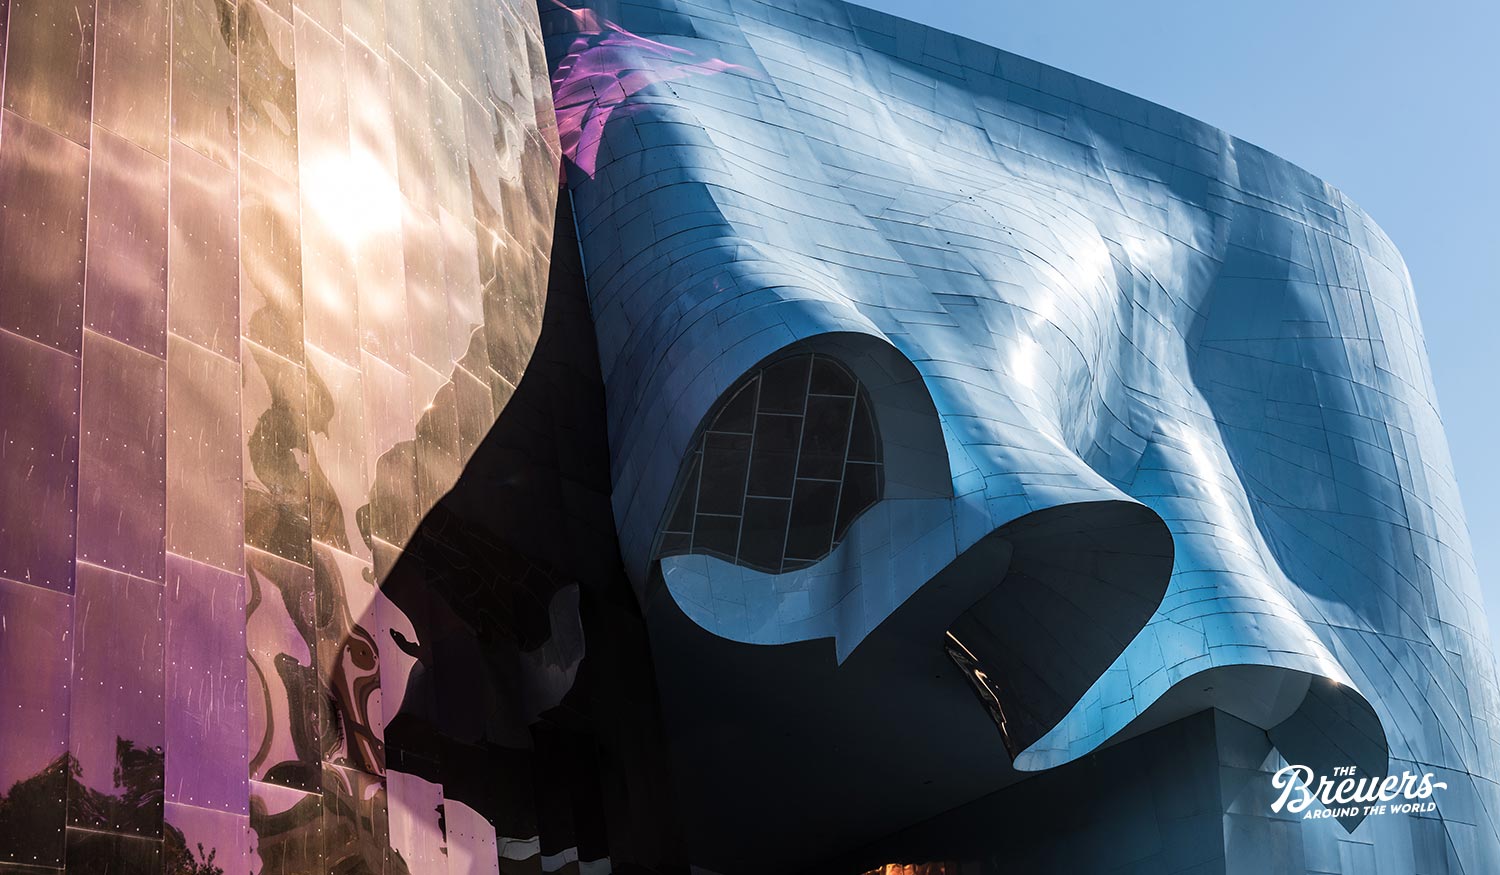 MoPop von Frank Gehry in Seattle